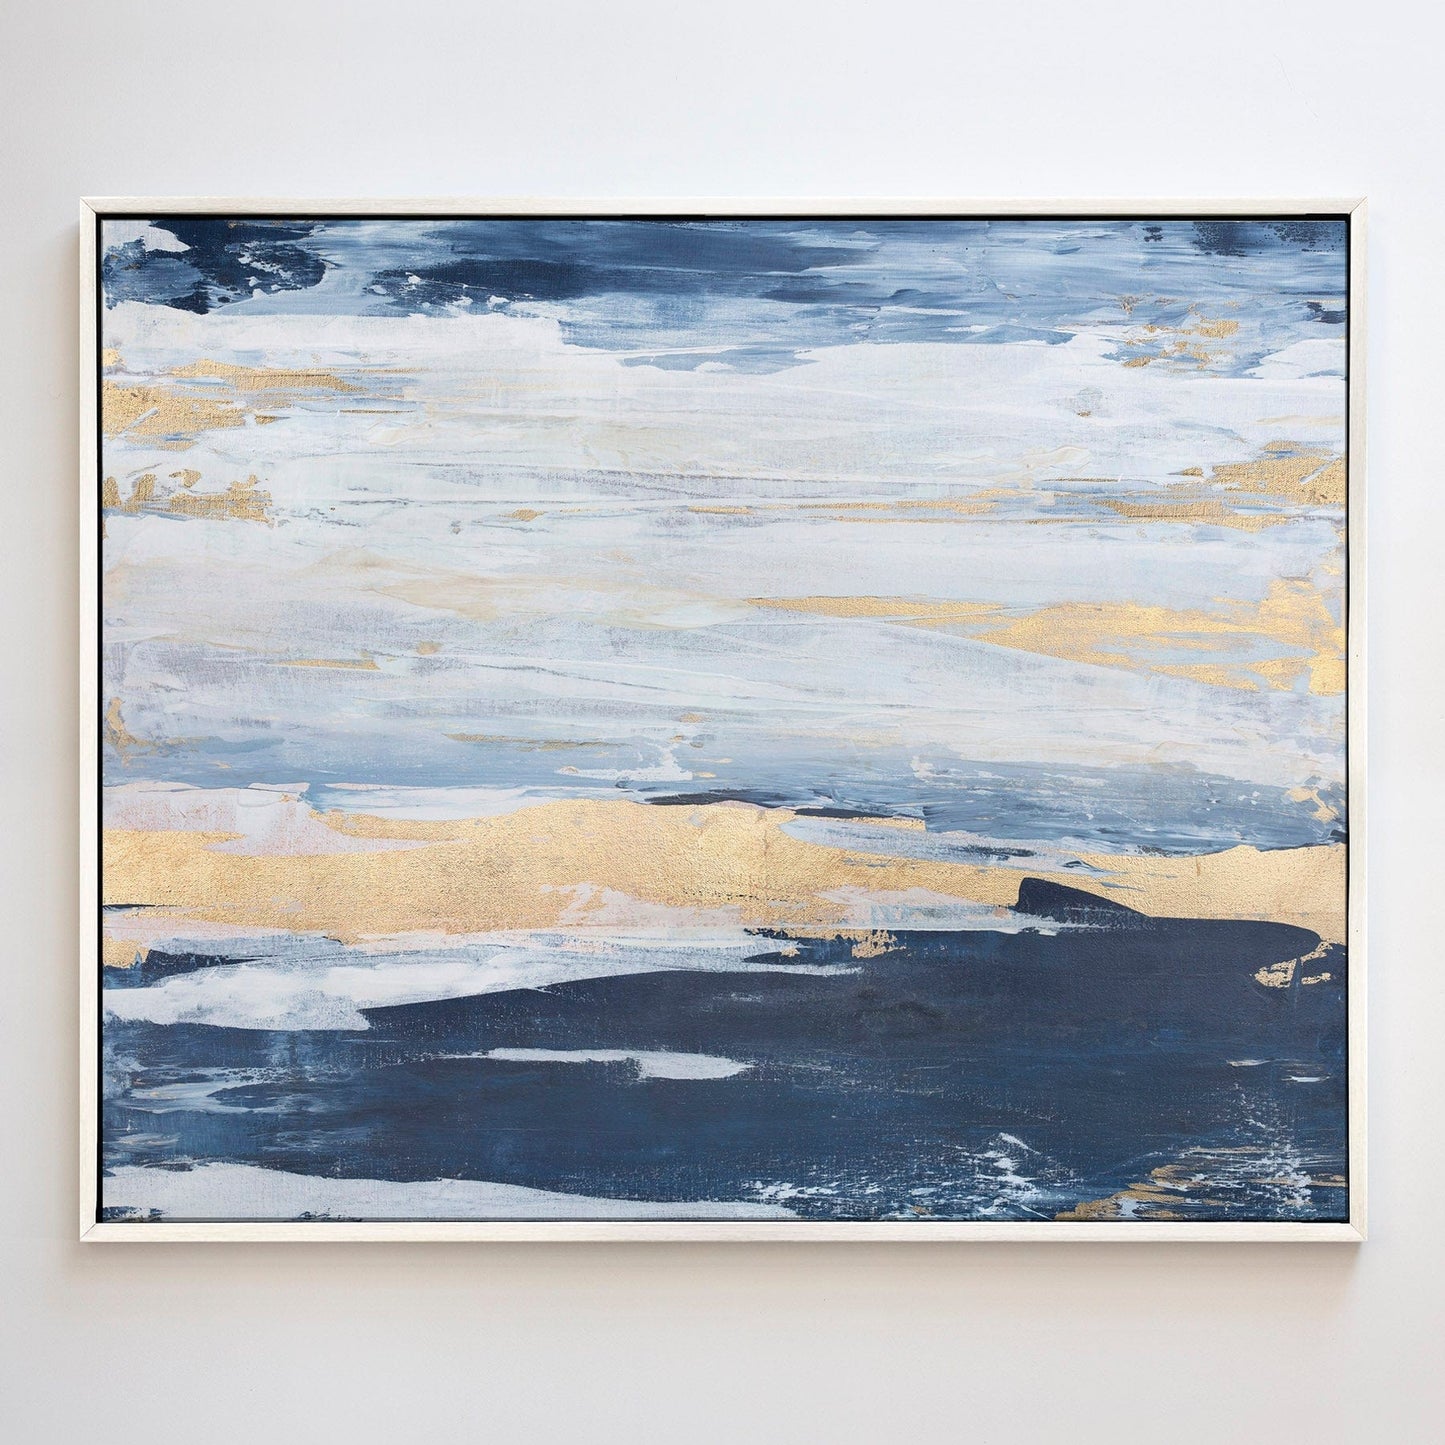 Julia Contacessi Fine Art Custom Canvas Print Salt Wash No. 2 - Canvas Print